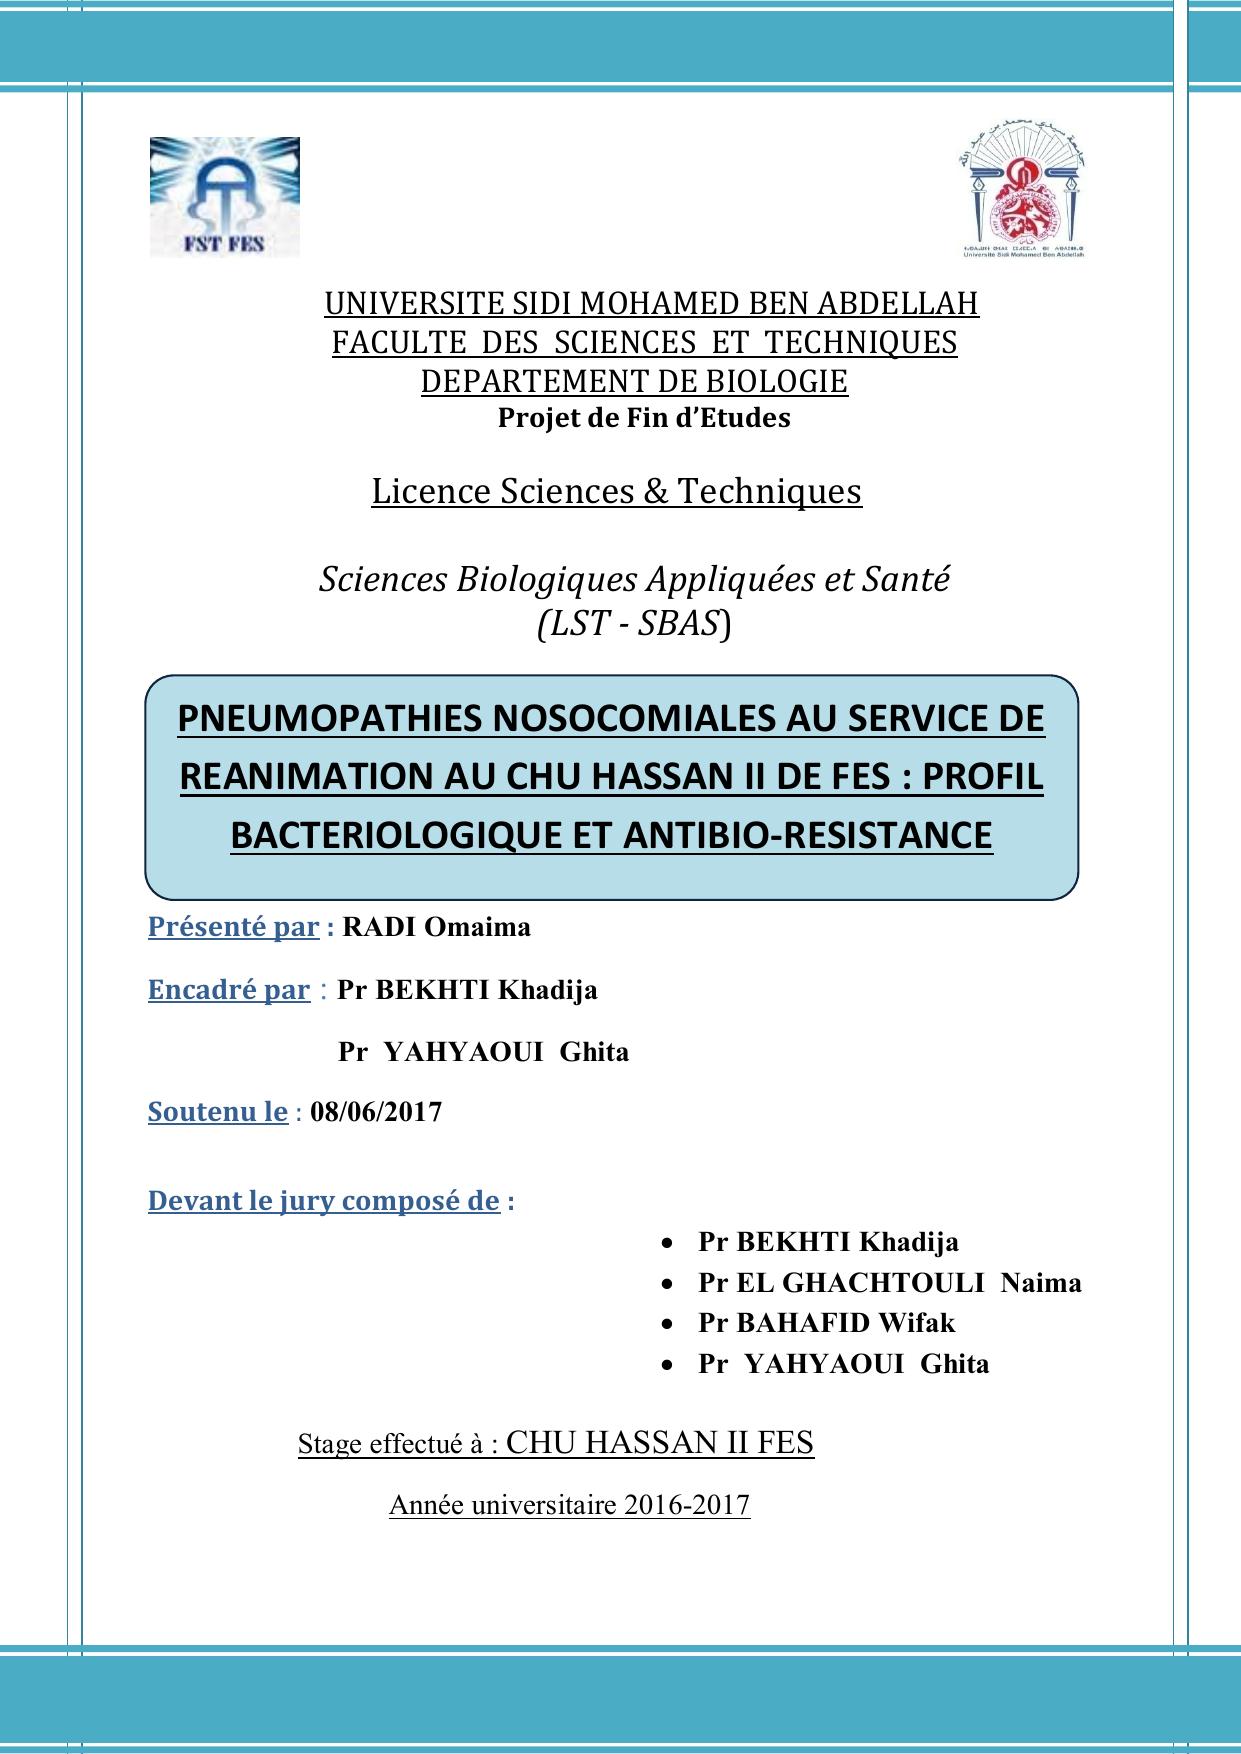 Pneumopathies nosocomiales au service de réanimation au CHU Hassan II de Fès: Profil bactériologique et antibio-résistance